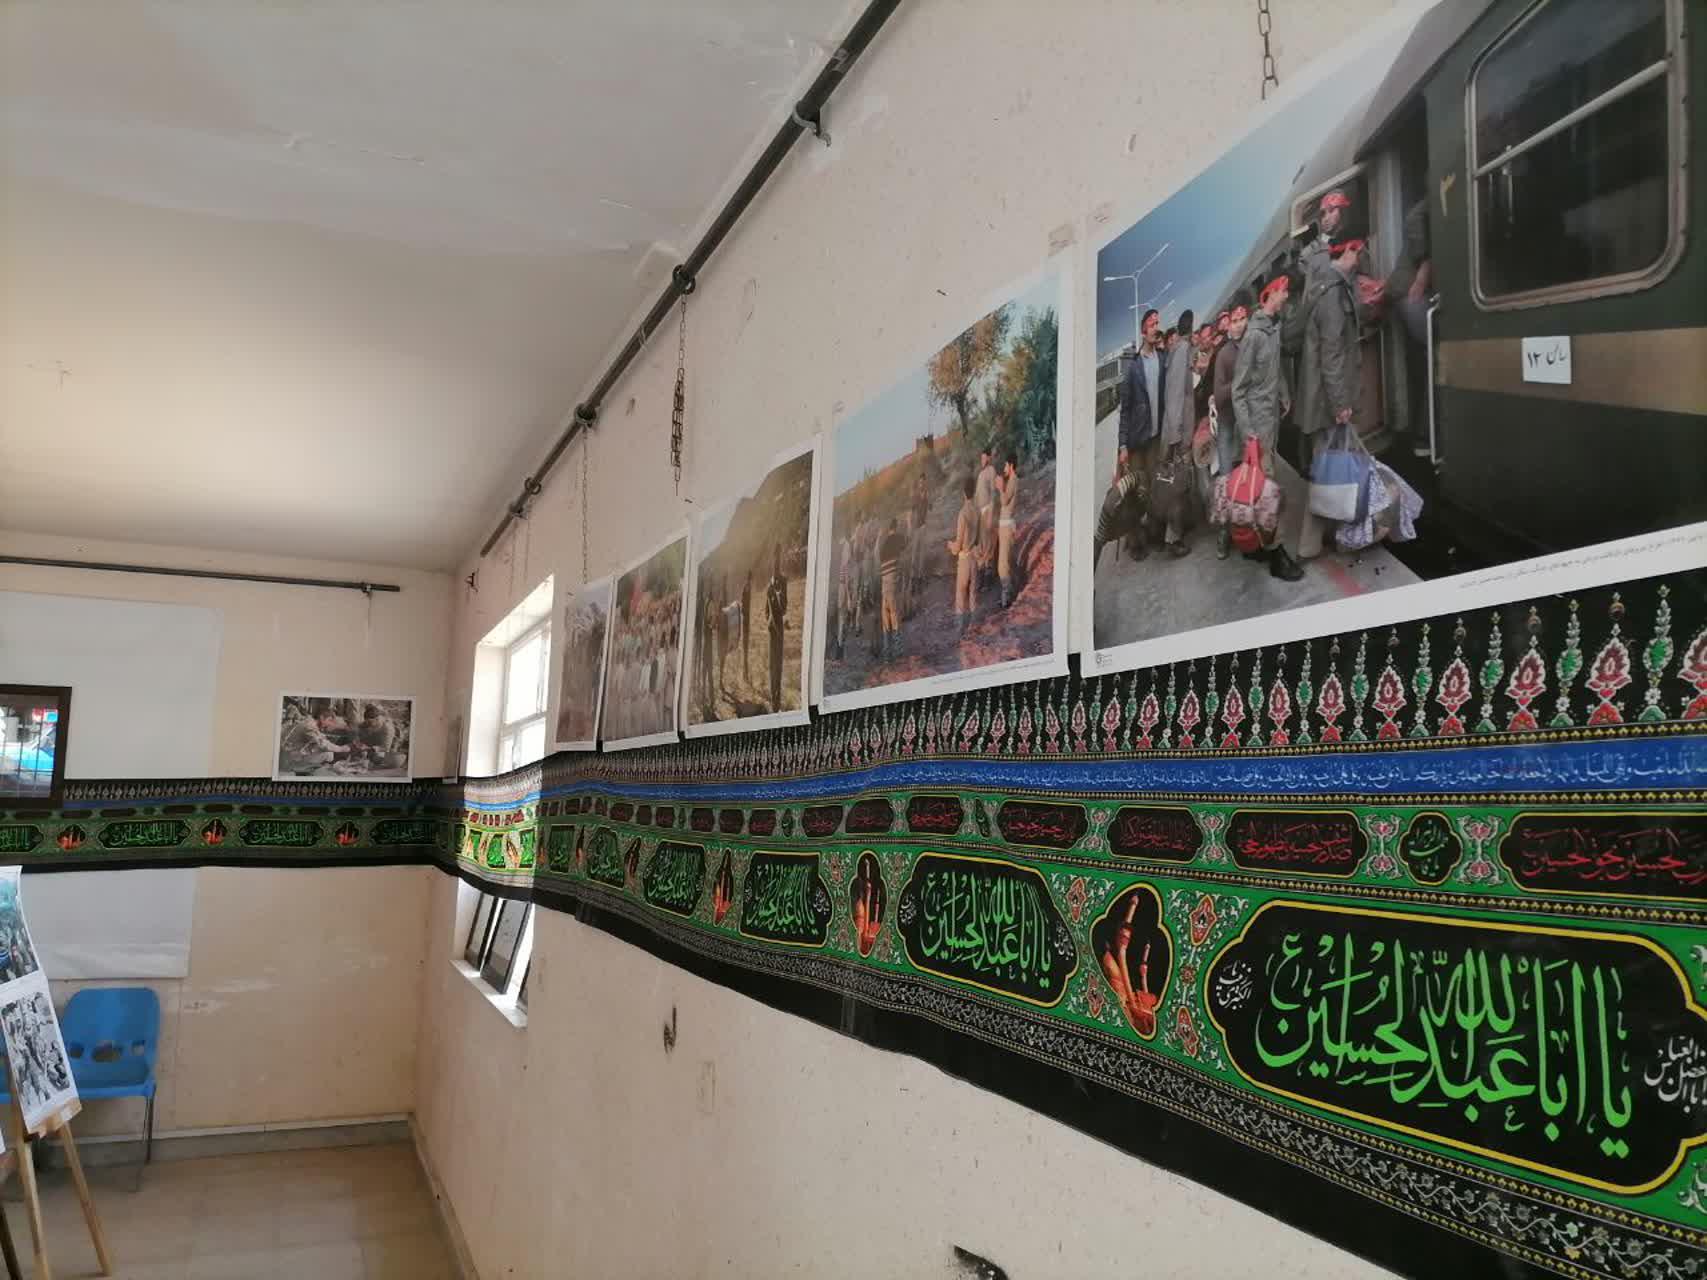 حماسه آفريني هاي هشت سال دفاع مقدس در قاب  نمايشگاه عکس  اهالي مسجد در اسفراين